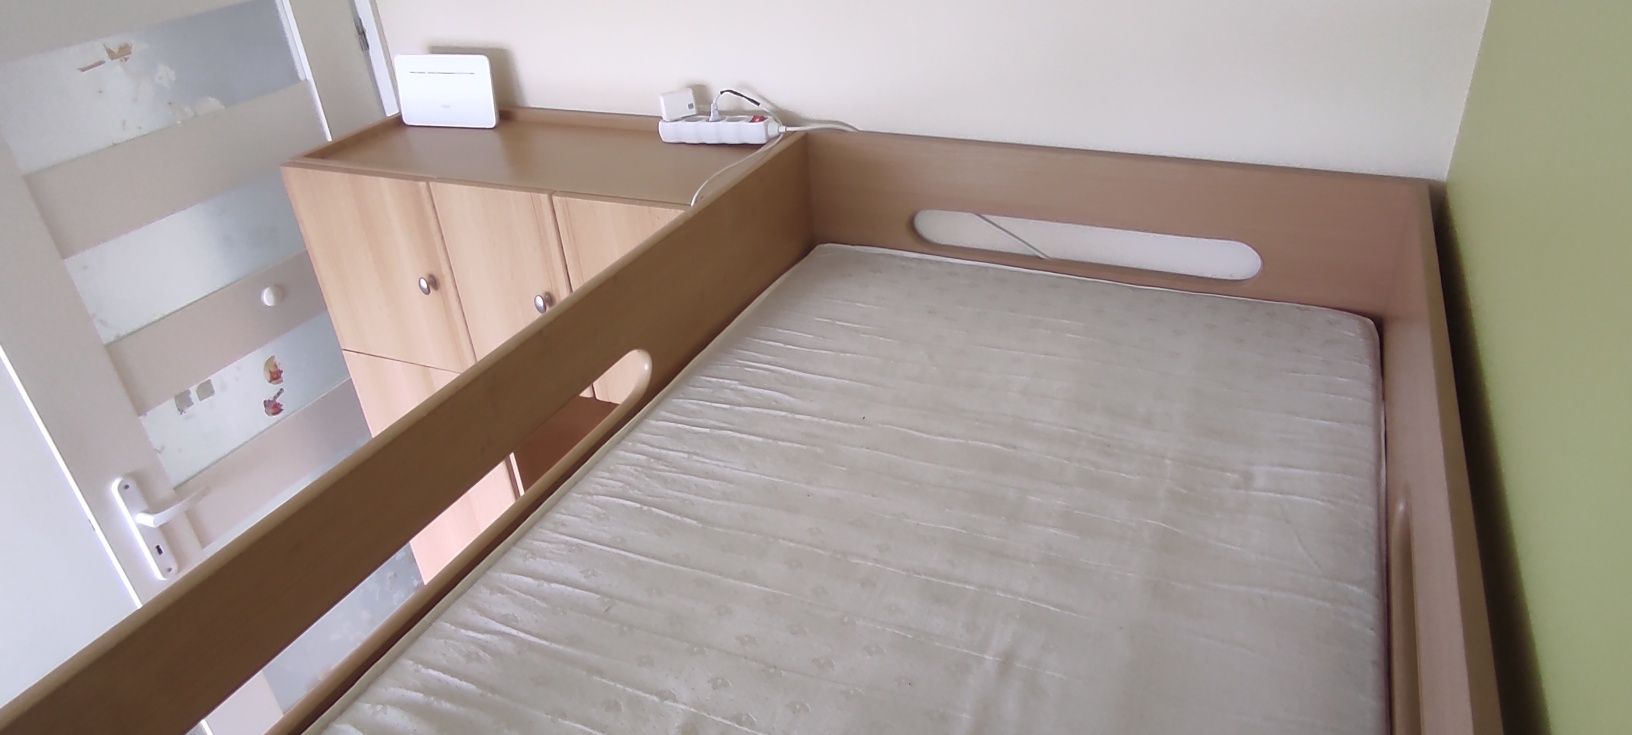 Łóżko piętrowe z półkami i szufladami